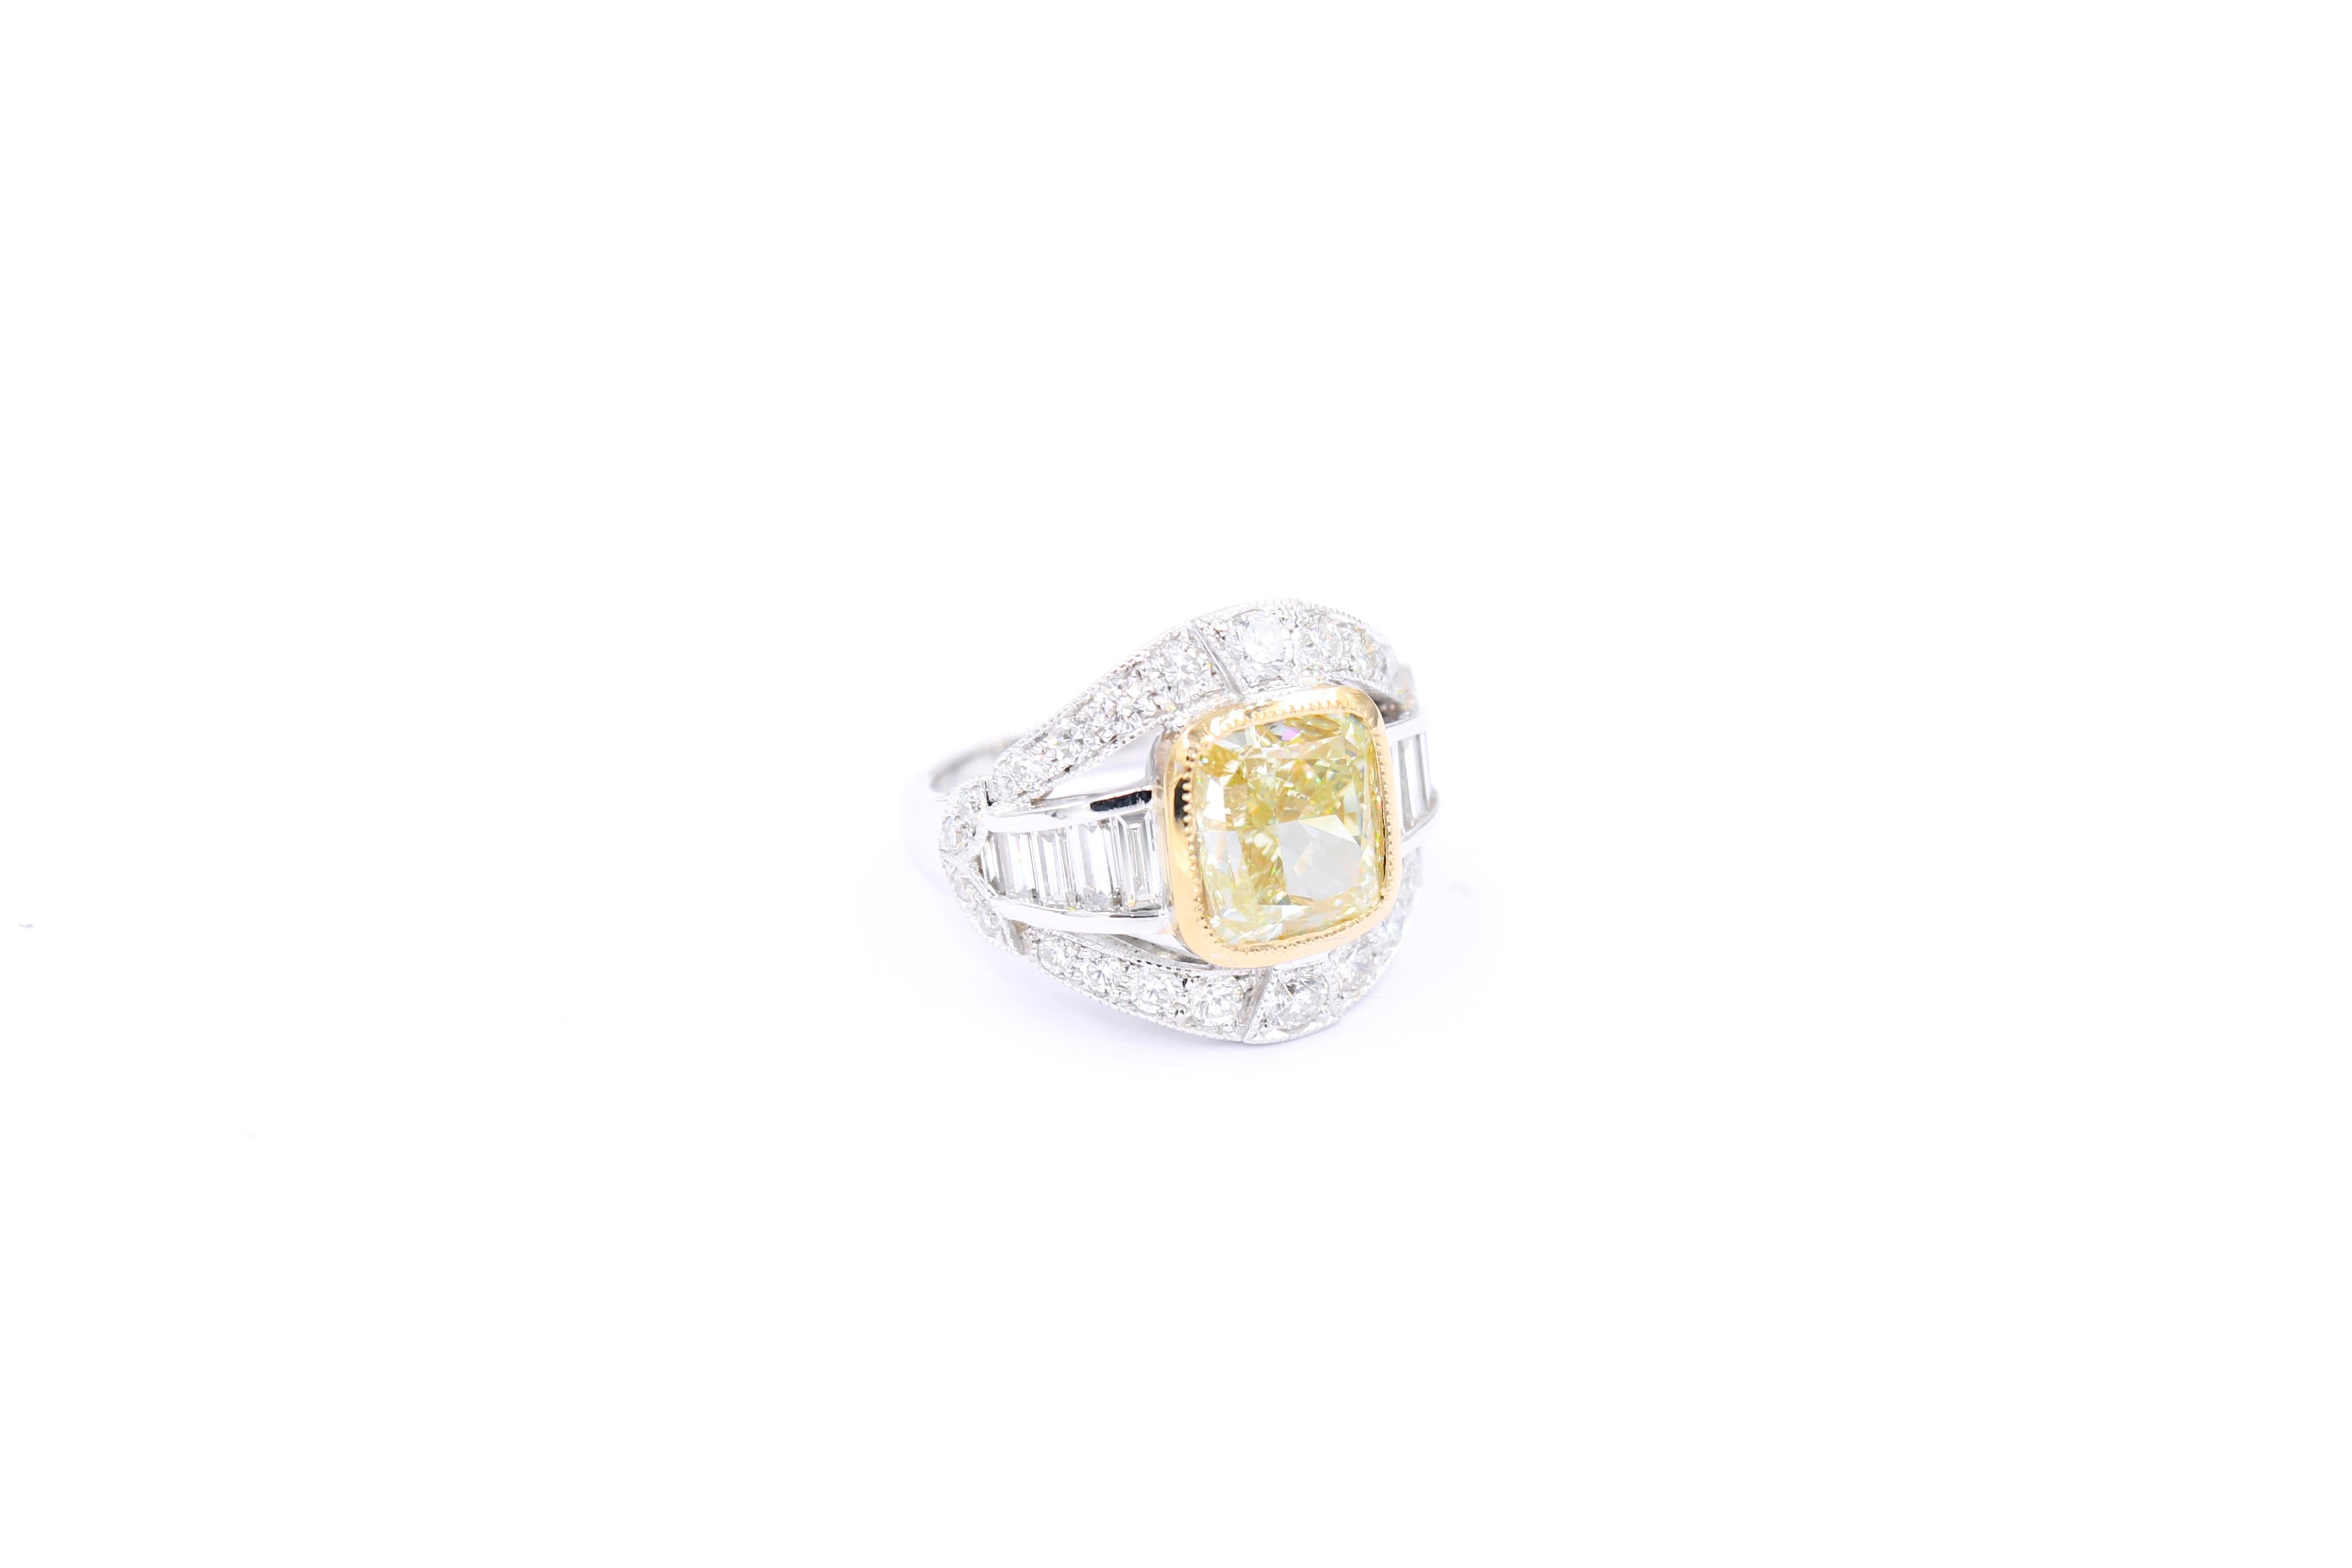 Cushion Cut GIA certified Fancy yellow 5.01 Carat Diamond ring  For Sale